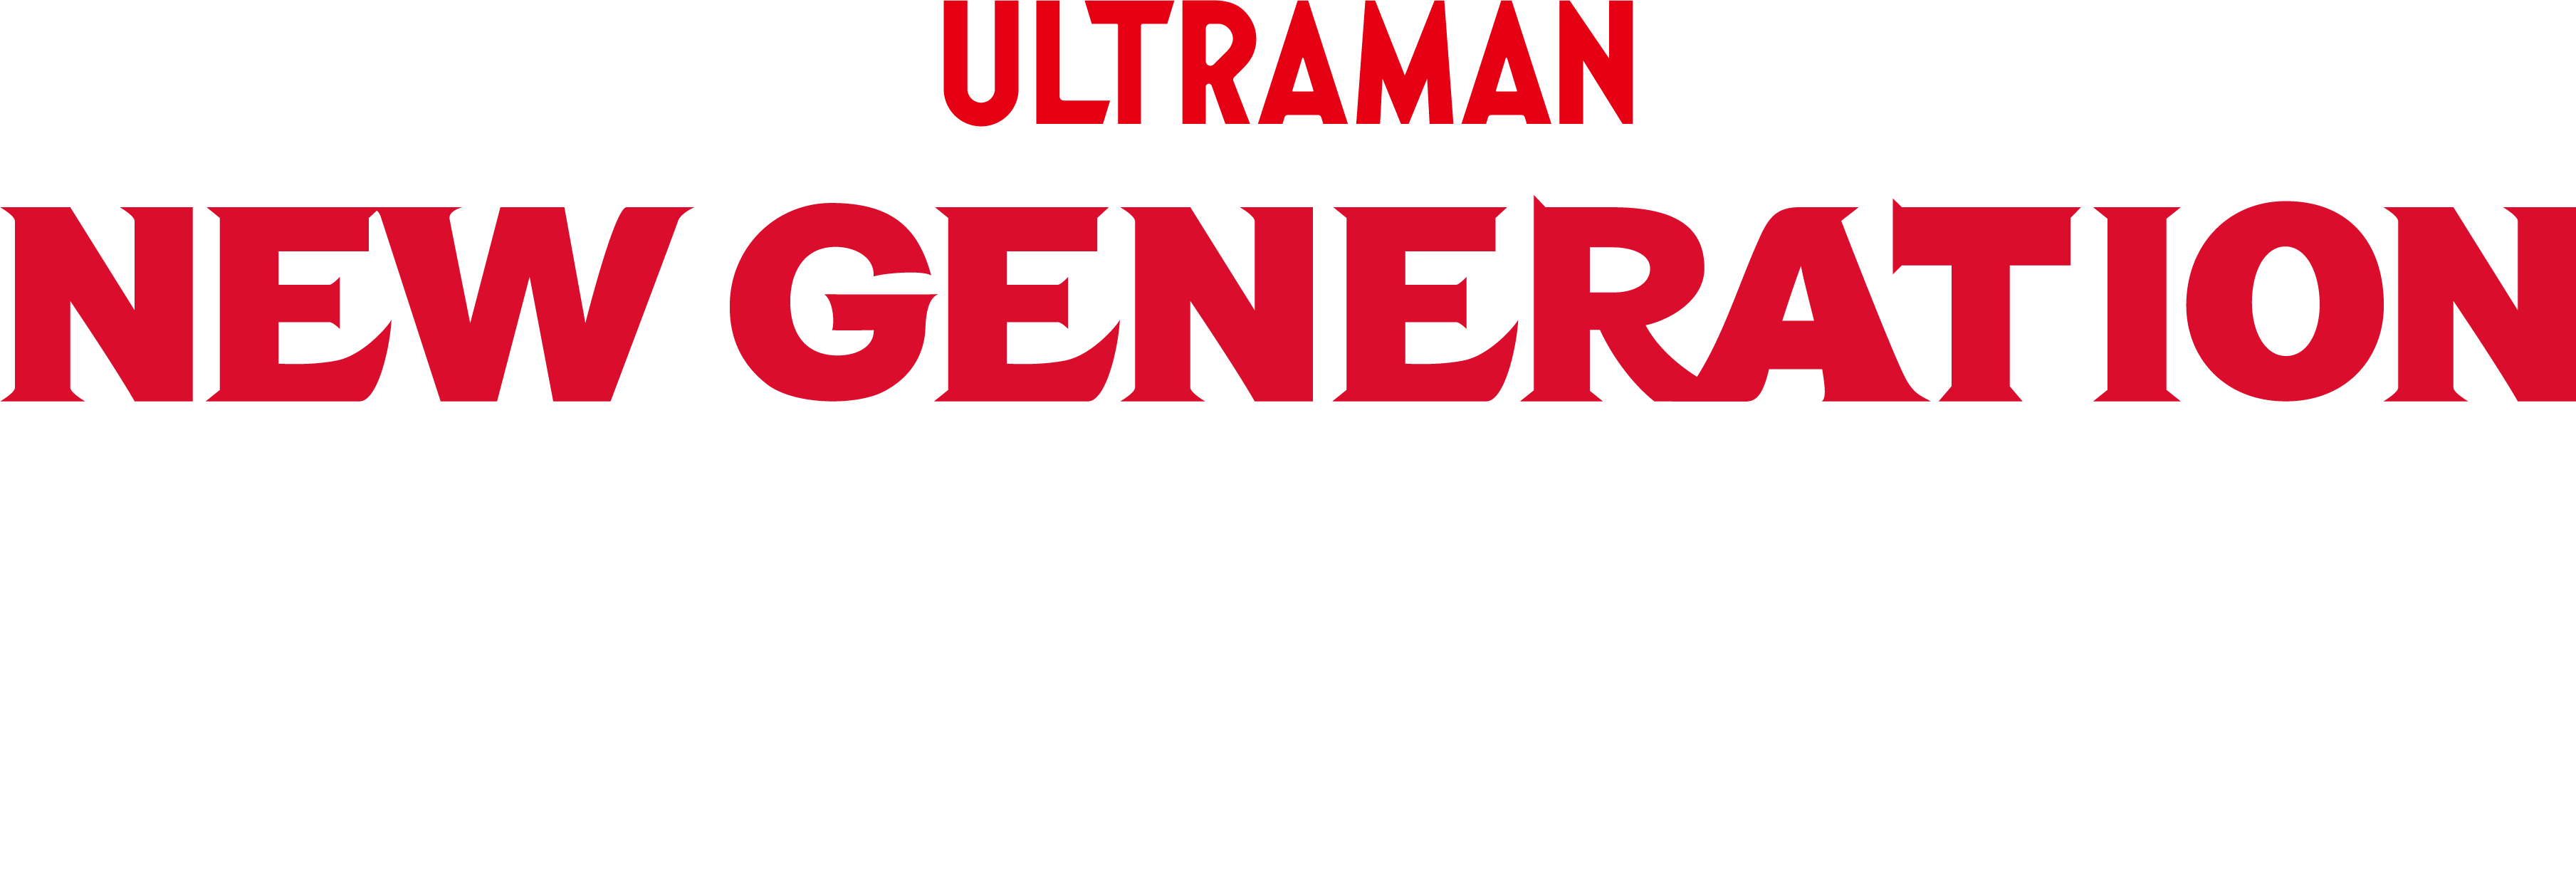 NEW GENERATION THE LIVE ウルトラマンブレーザー編